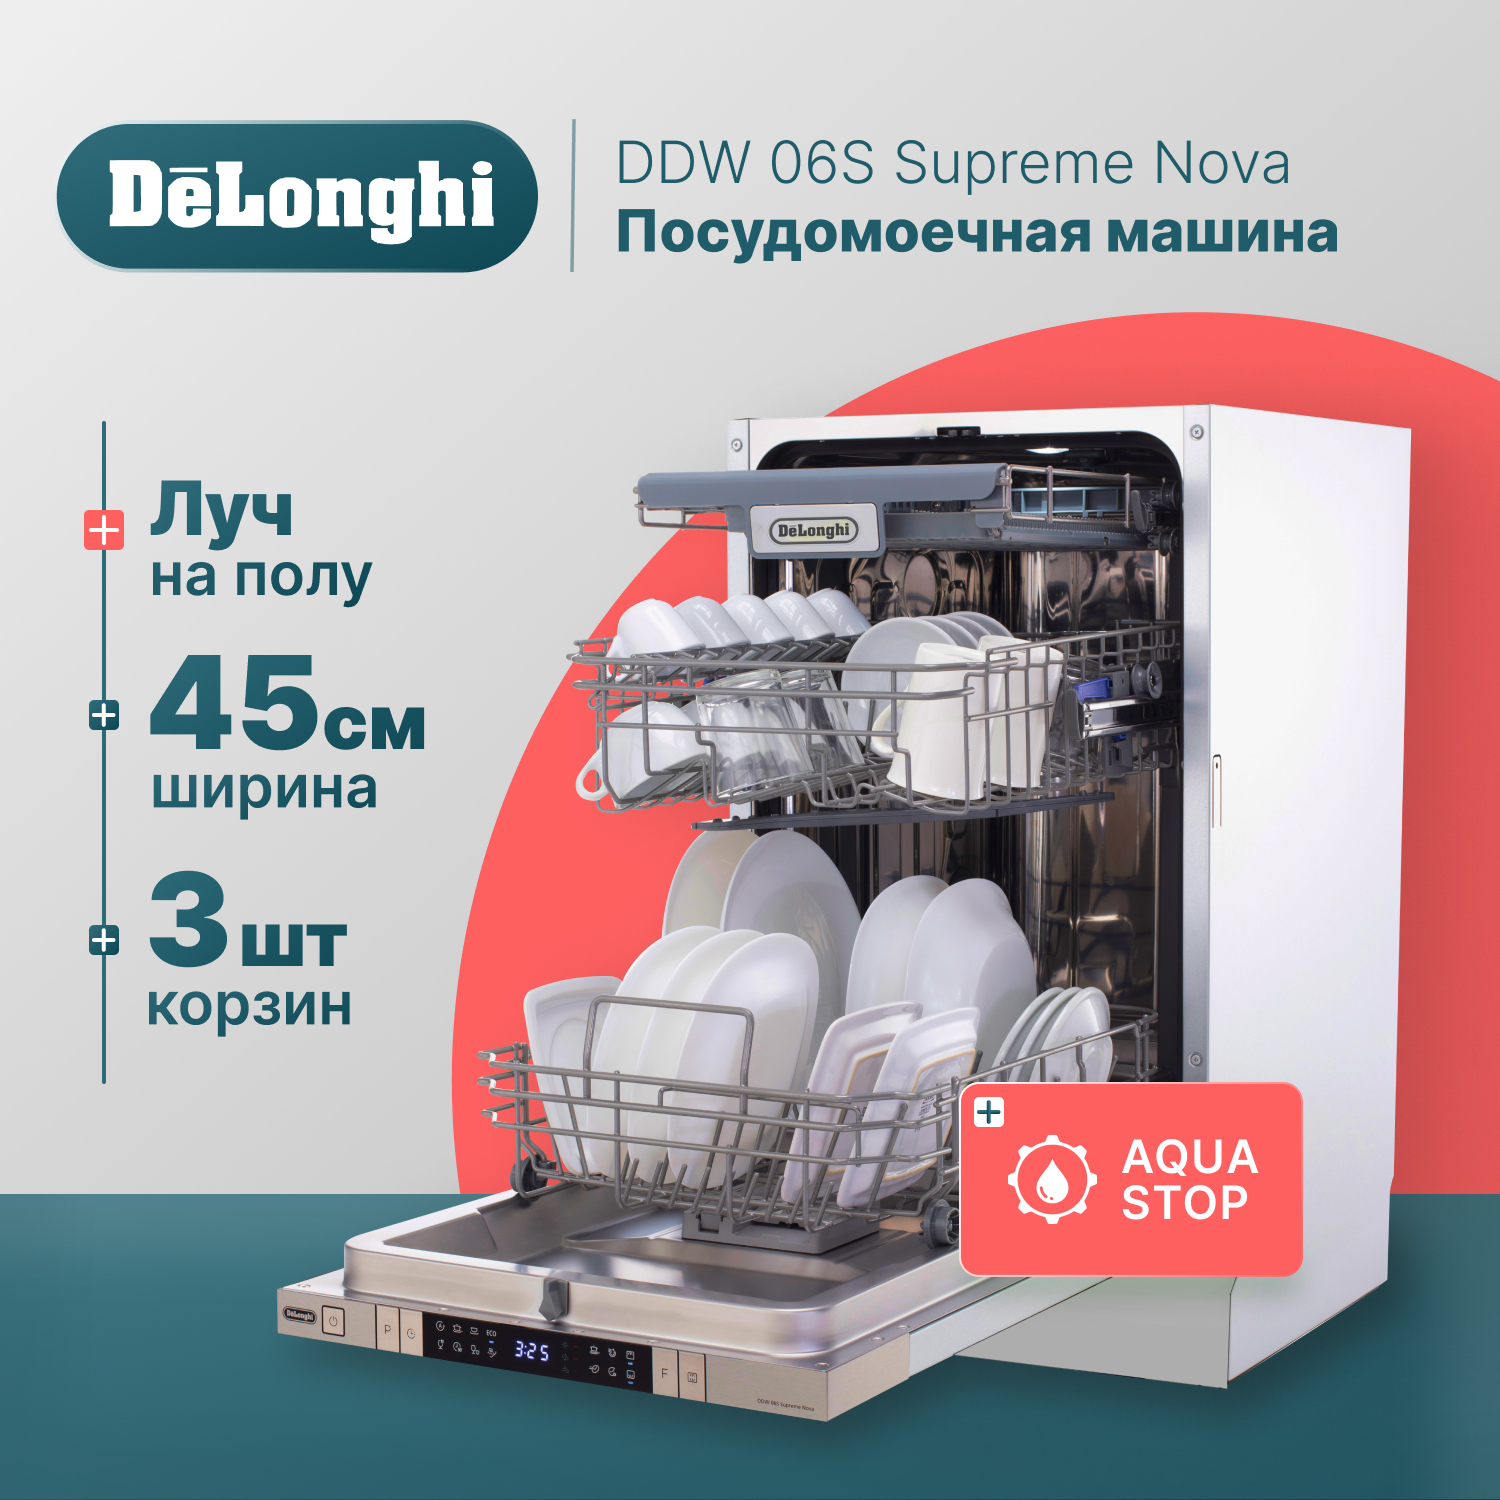 Встраиваемая посудомоечная машина Delonghi DDW06S Supreme Nova встраиваемая посудомоечная машина delonghi ddw06s granate platinum